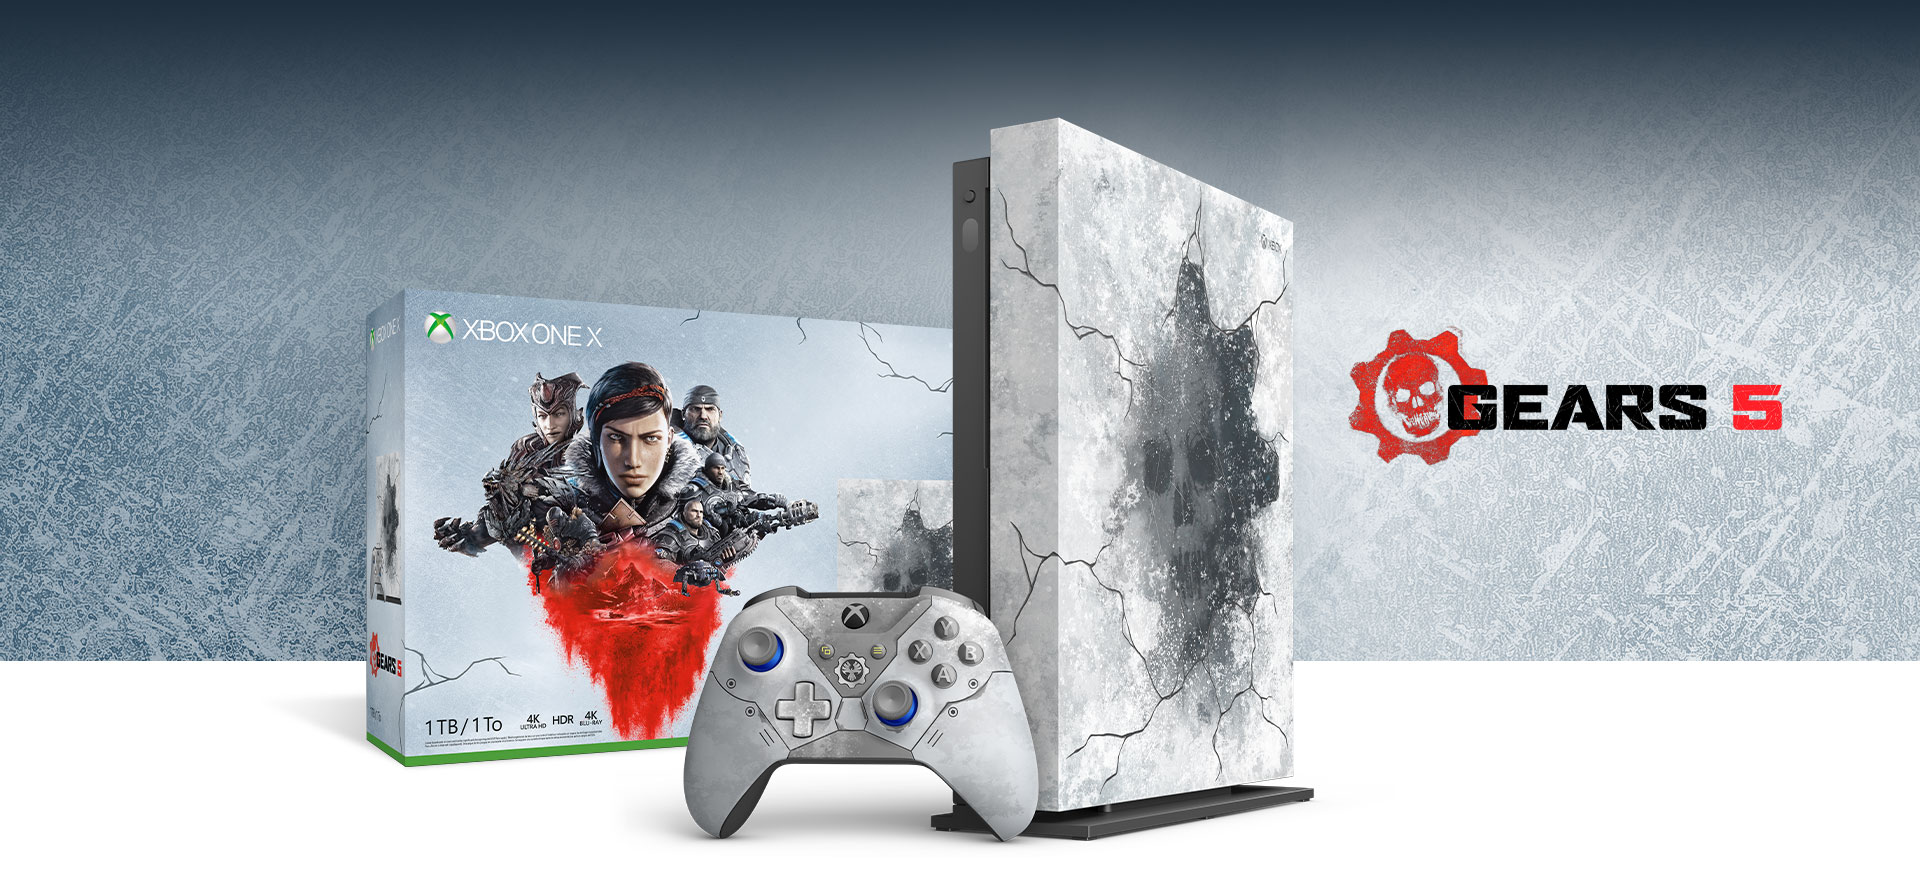 Hasil gambar untuk Xbox One X Gears 5 Bundle